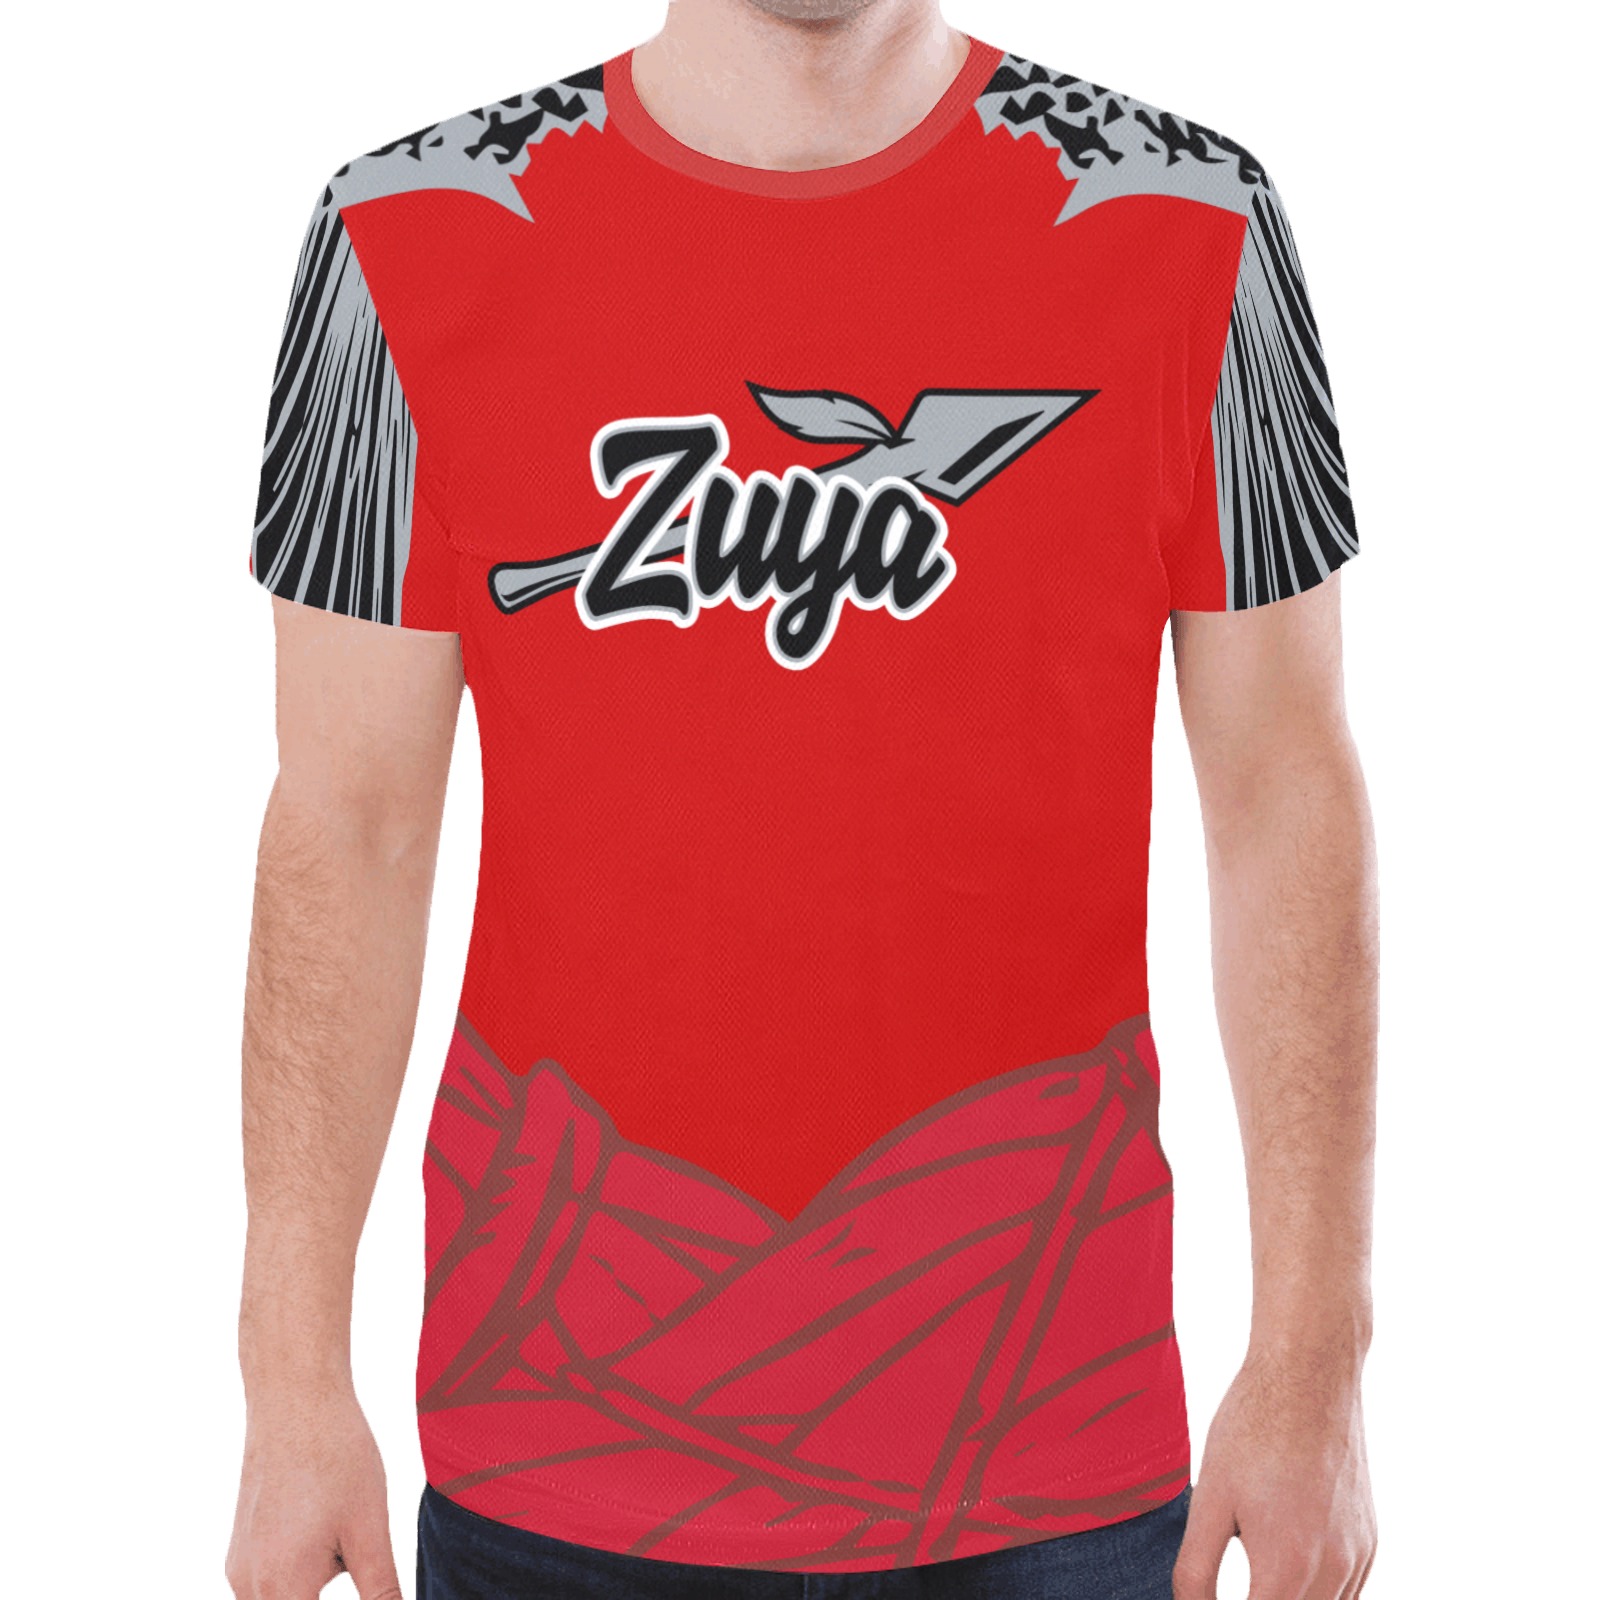 zuya-95-XL New All Over Print T-shirt for Men (Model T45)